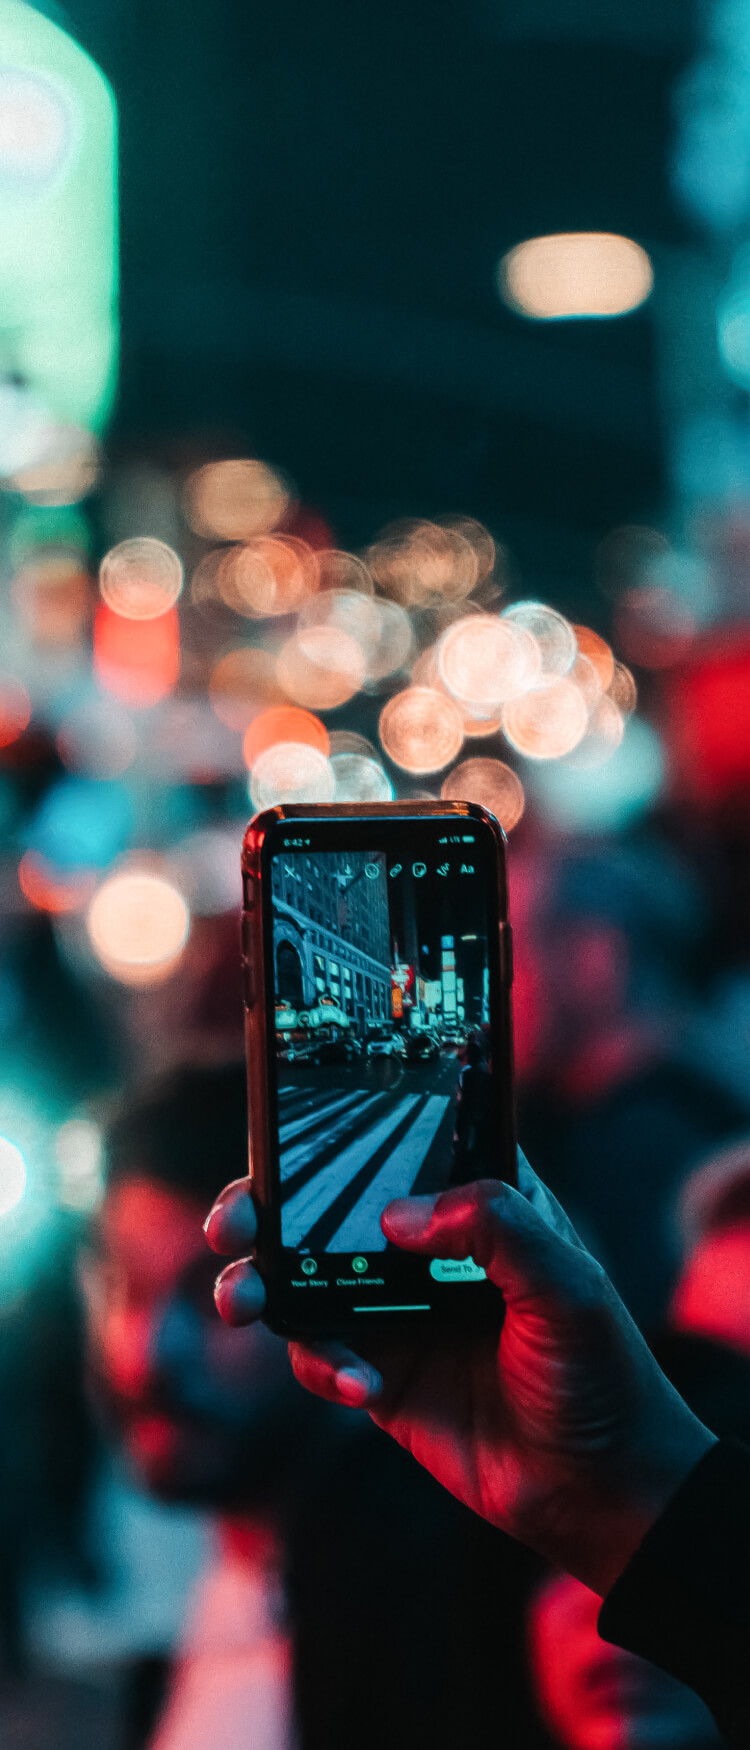 Zbliżenie na dłoń z telefonem. Zdjęcie miasta nocą, w tle rozmazane refleksy światła ulicznych latarni.